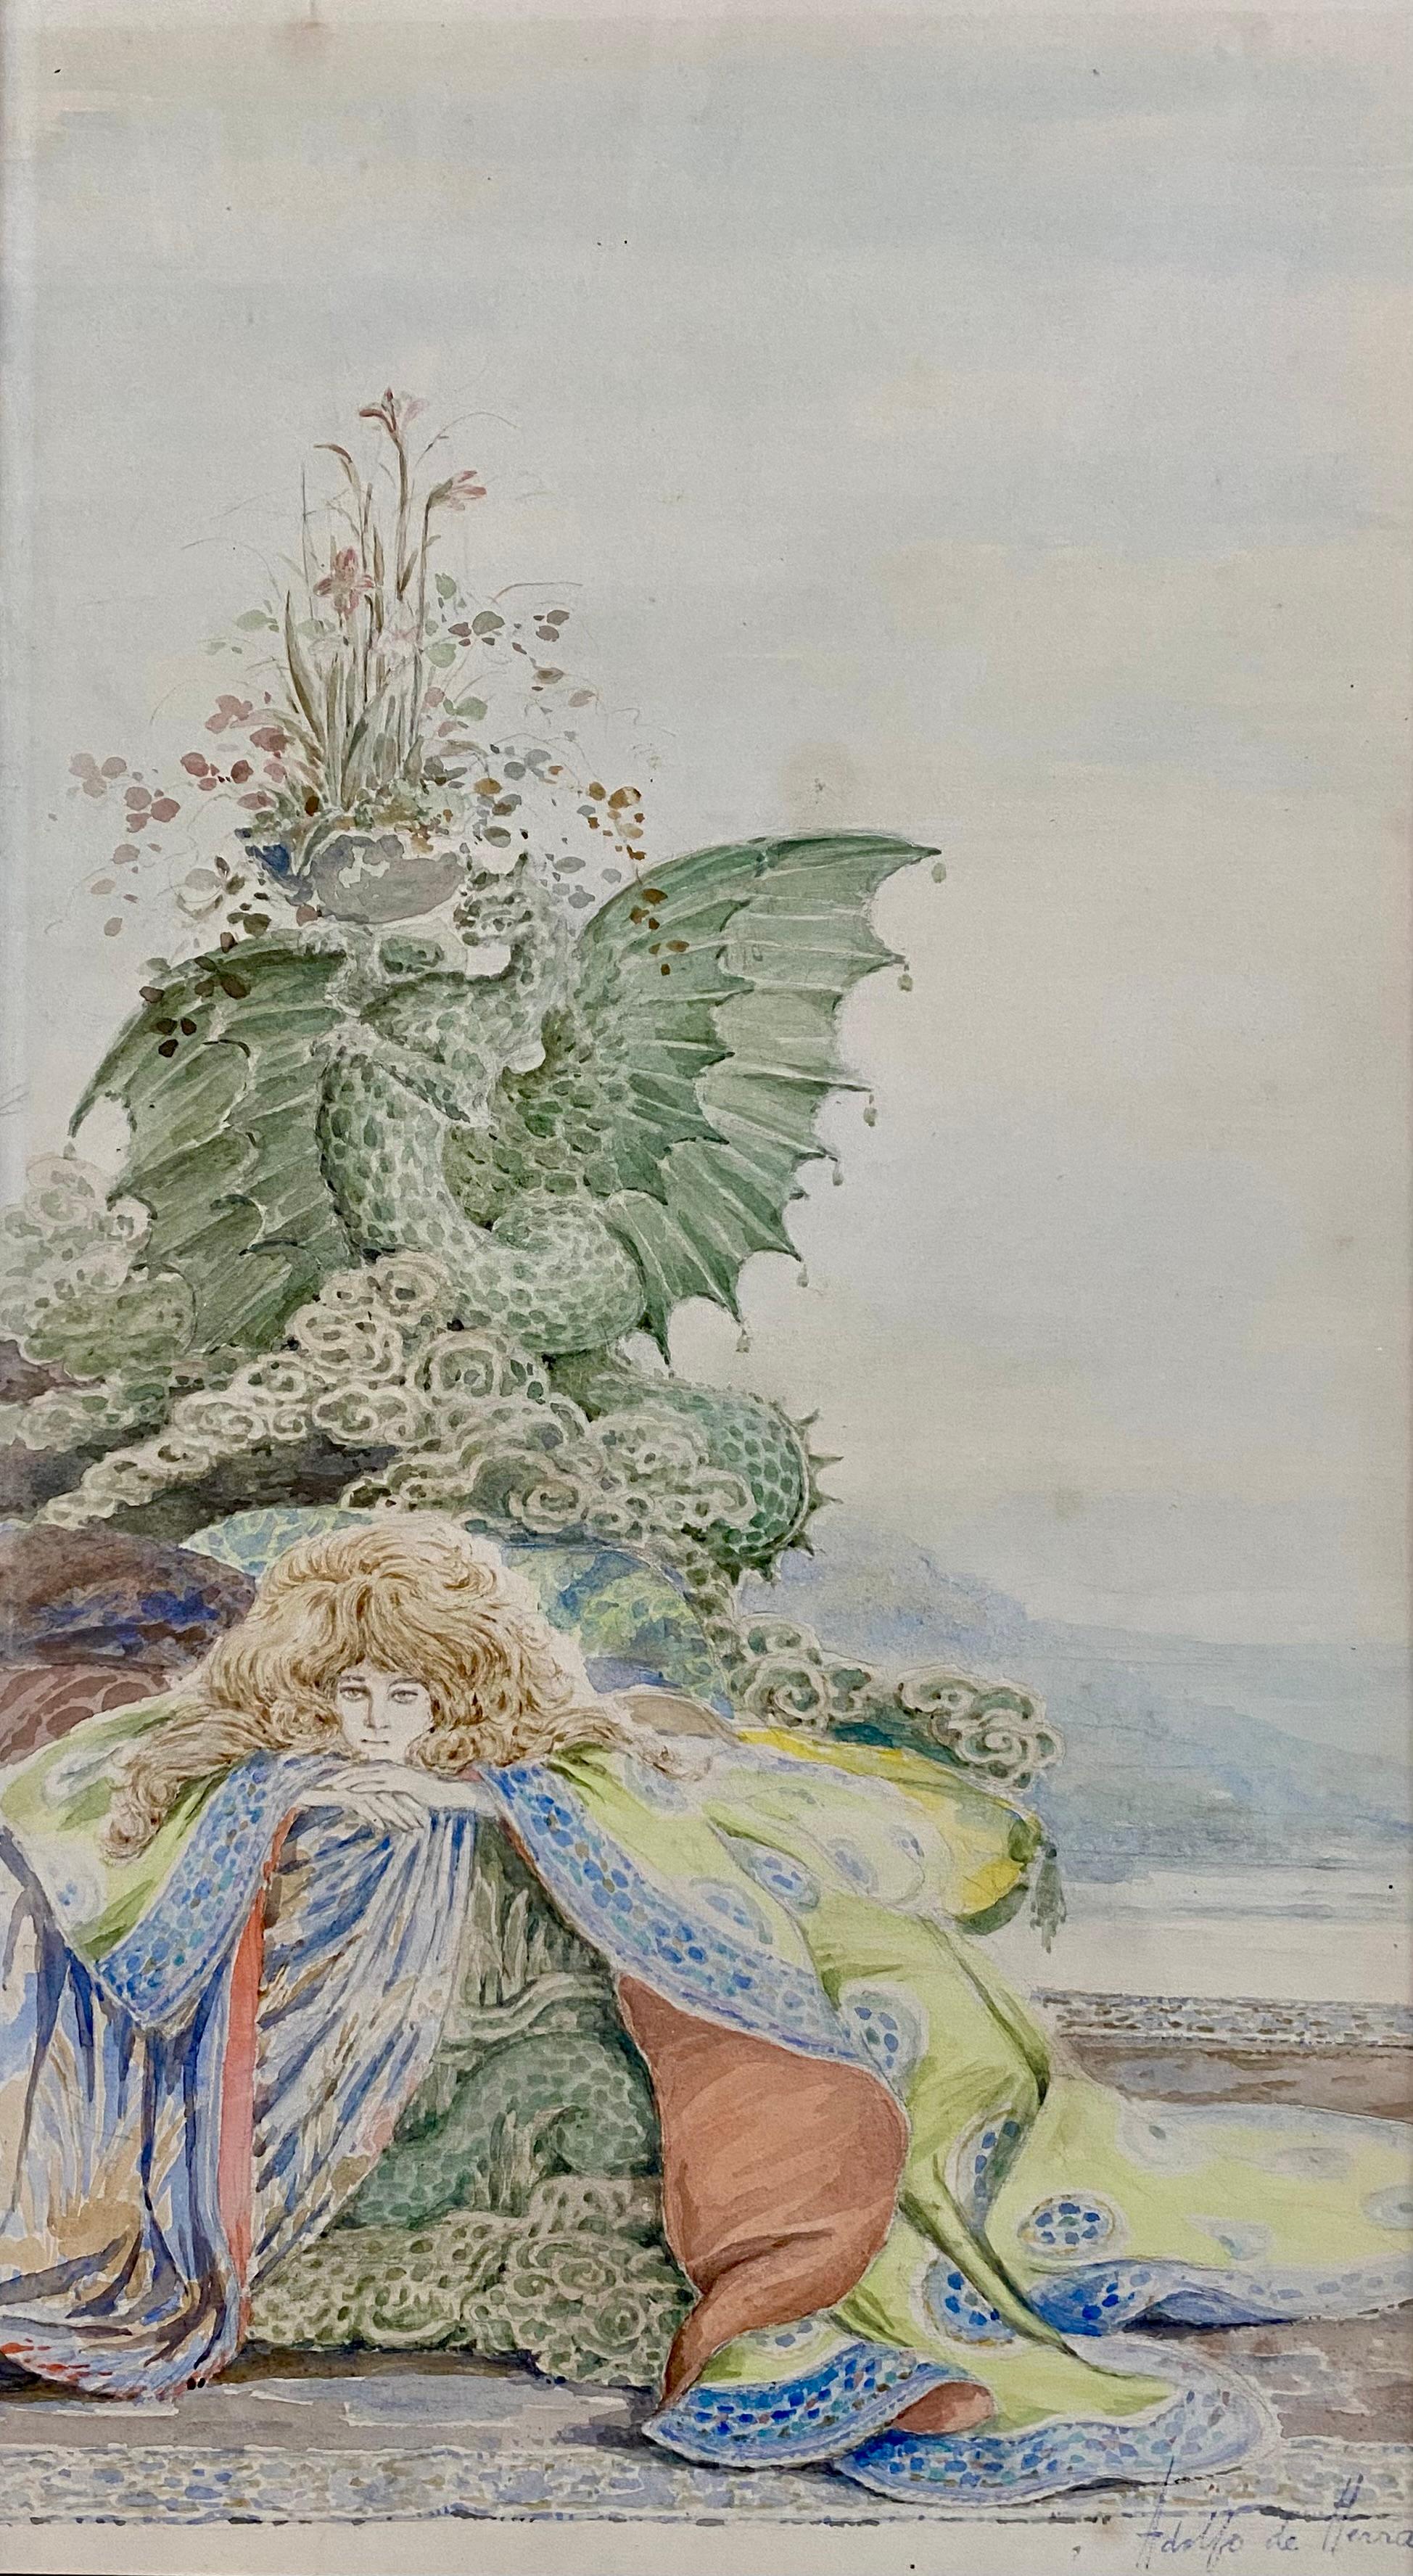 Adolfo De Herra, Woman With Dragon Around 1900, Watercolor Symbolism - Art by Adolfo de Herra